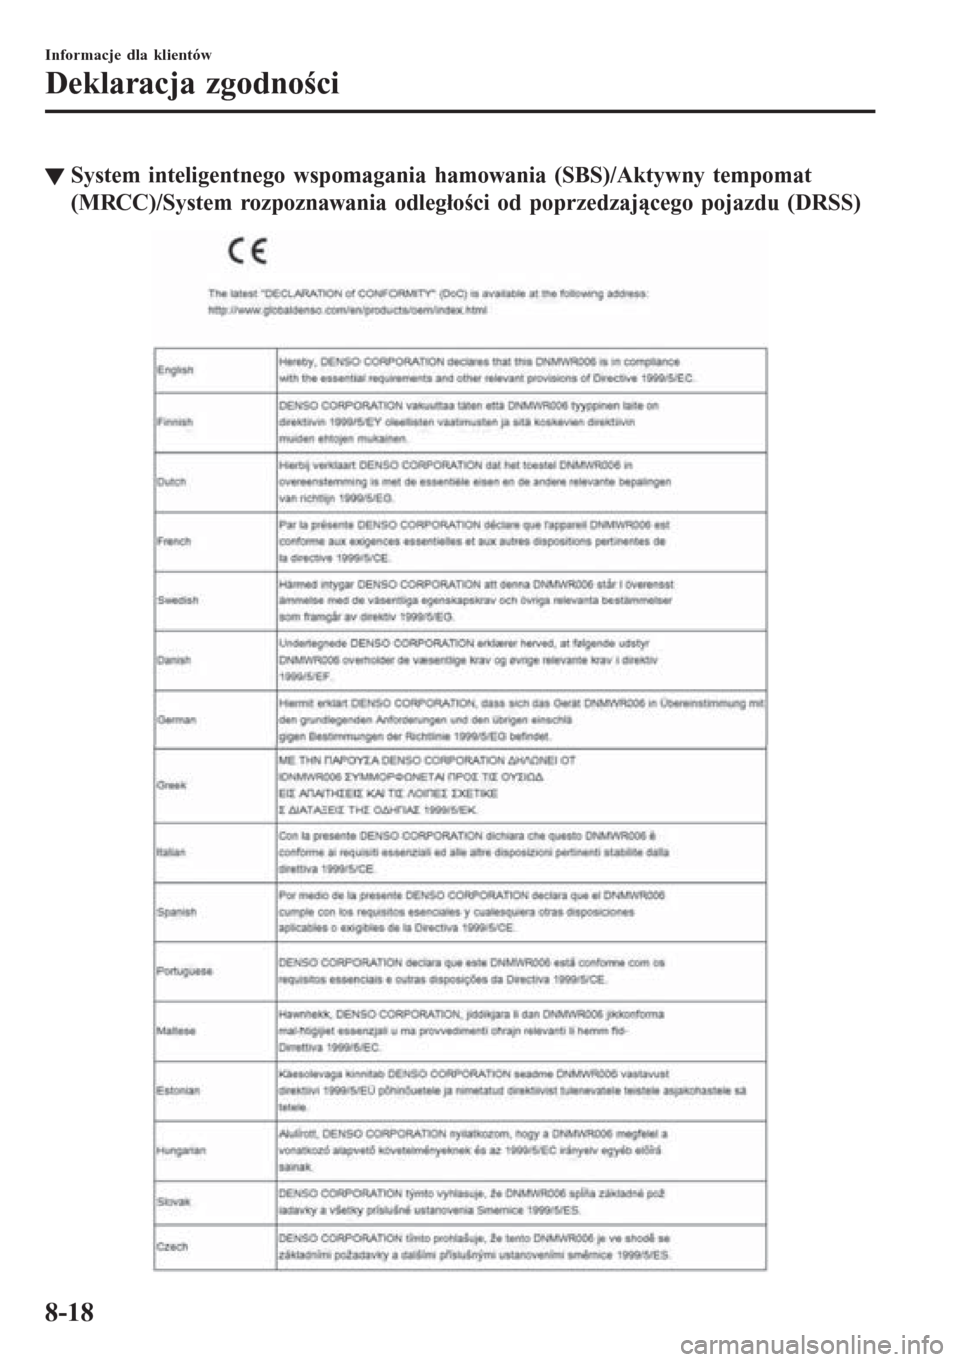 MAZDA MODEL CX-3 2016  Instrukcja Obsługi (in Polish) tSystem inteligentnego wspomagania hamowania (SBS)/Aktywny tempomat
(MRCC)/System rozpoznawania odległości od poprzedzającego pojazdu (DRSS)
Informacje dla klientów
Deklaracja zgodności
8-18 